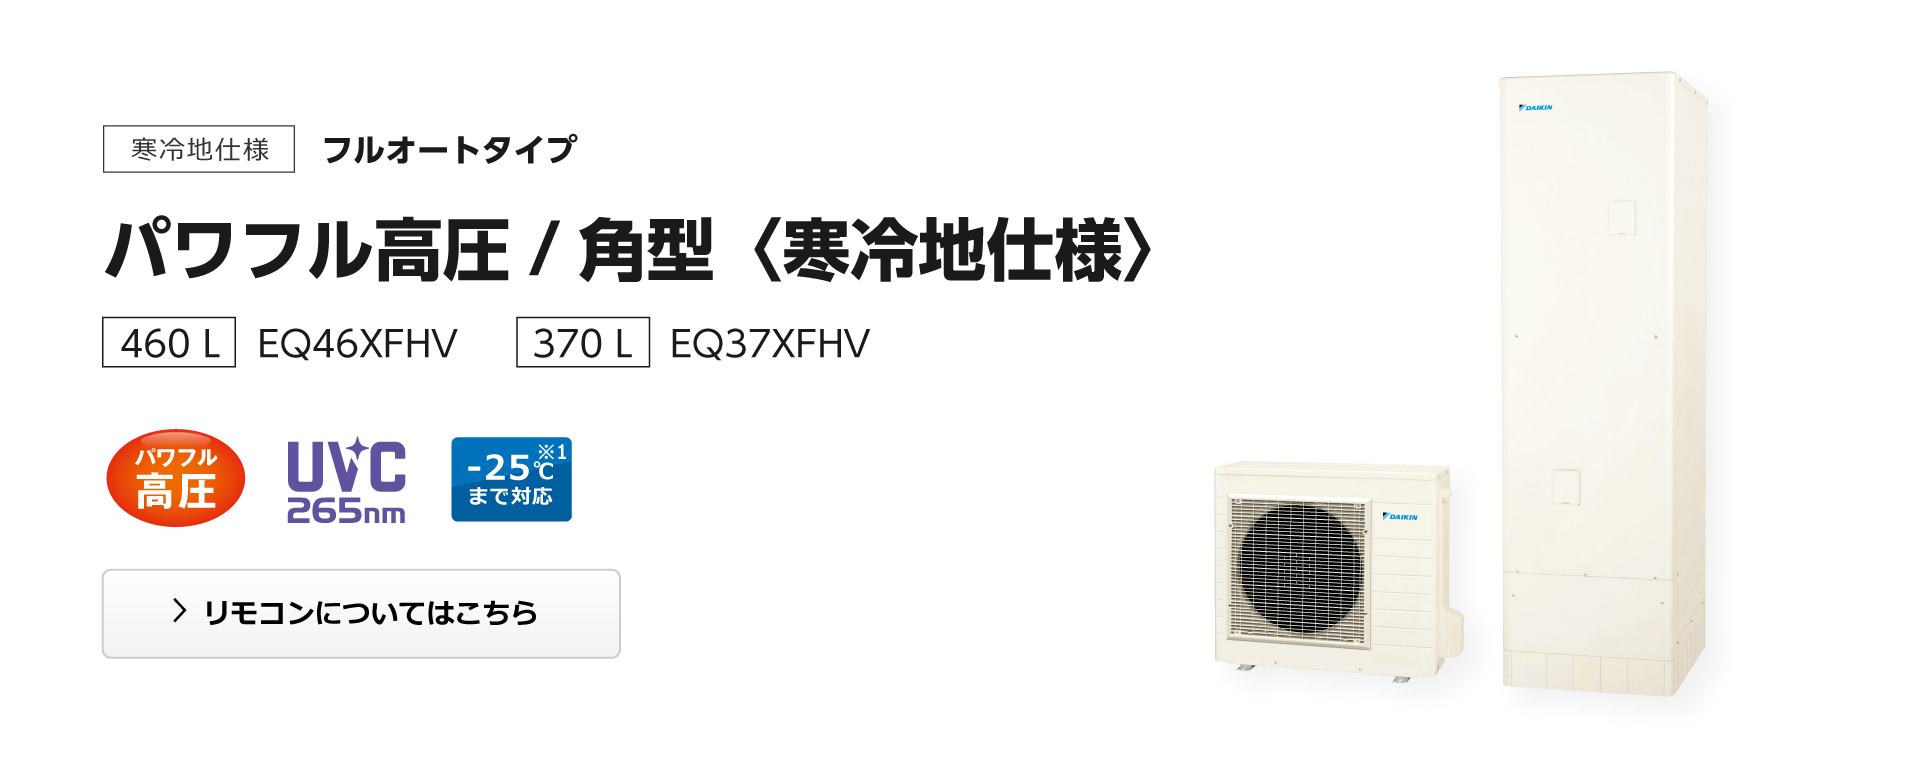 ダイキン 一般地仕様 フルオートタイプ   高圧 460リットル 薄型 (4-7人向け) EQ46XFTV - 4